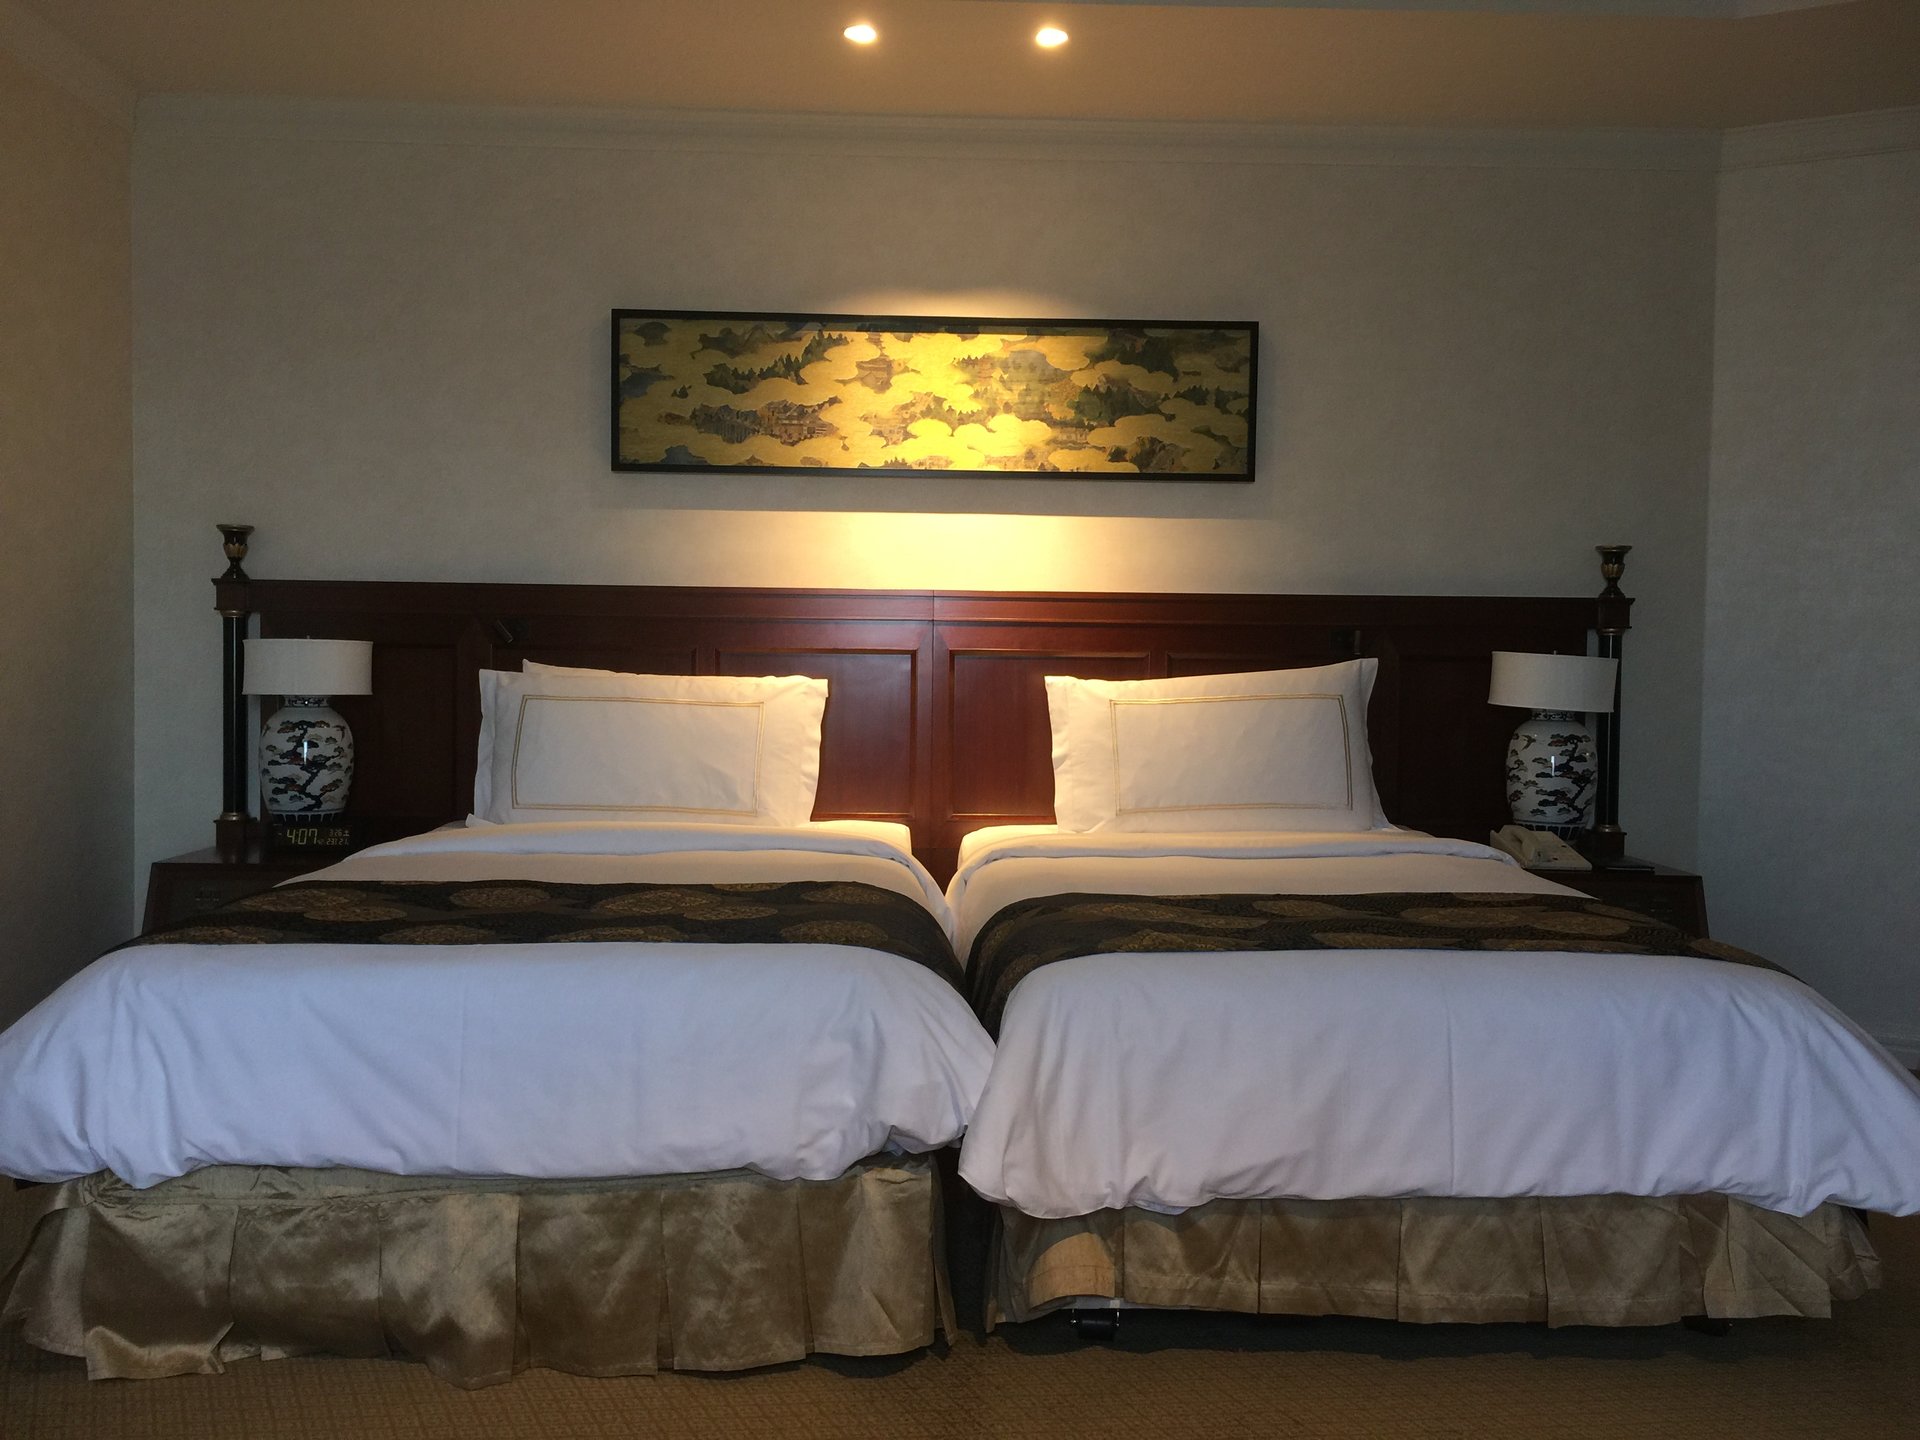 ホテル椿山荘の標準客室が豪華♡ホテルステイにアフタヌーンティーのご褒美デー